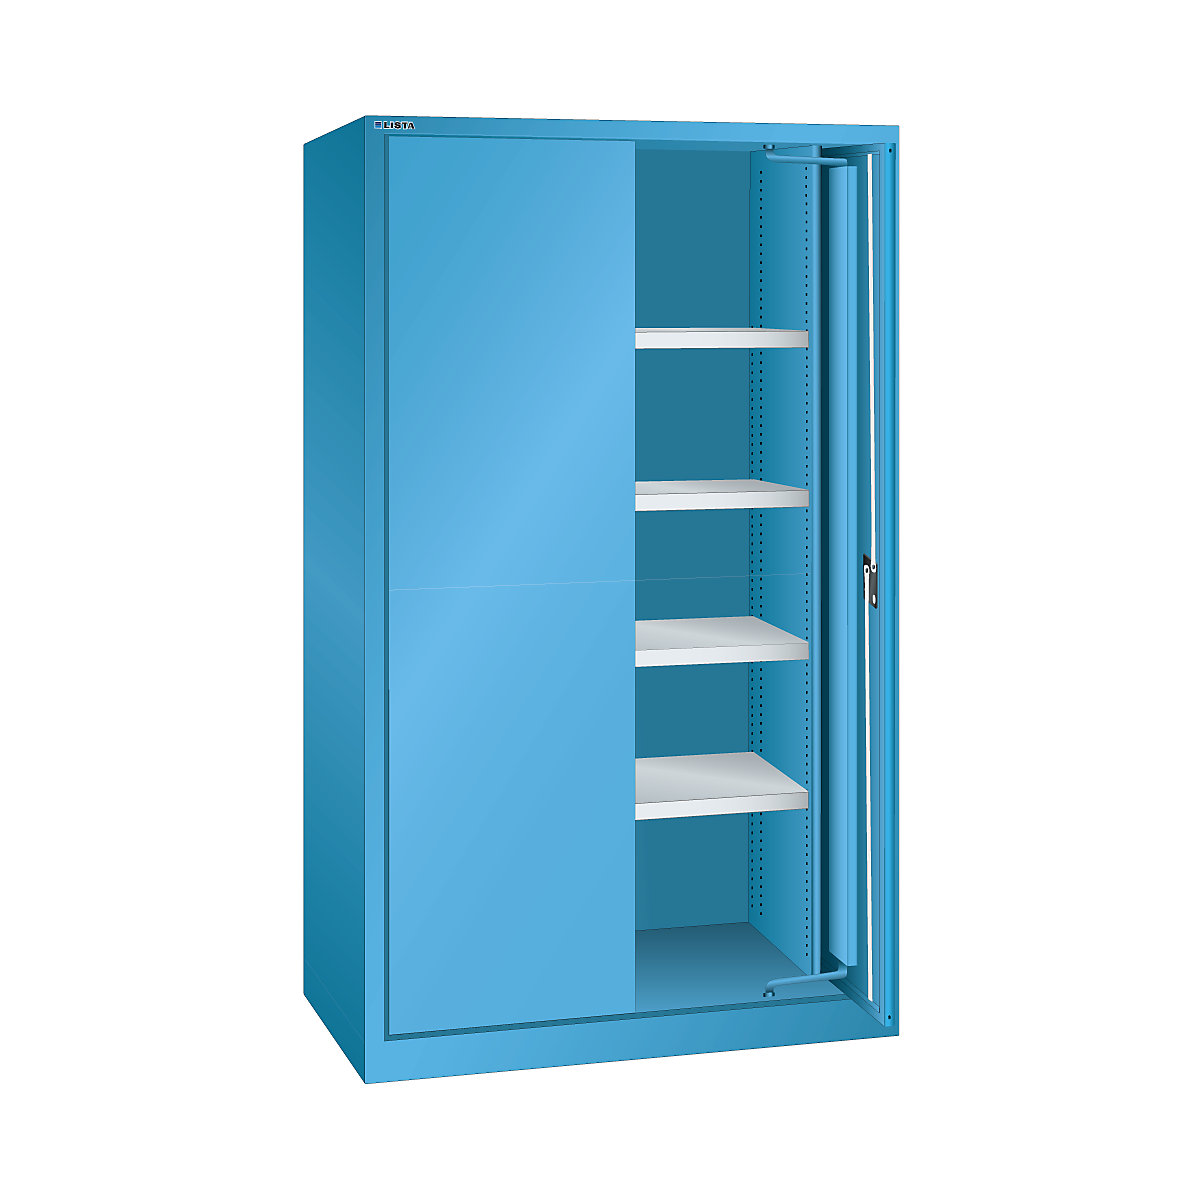 Skříň pro velká zatížení s výkyvnými dveřmi – LISTA, 4 police, s dveřmi z plného plechu, světlá modrá-8